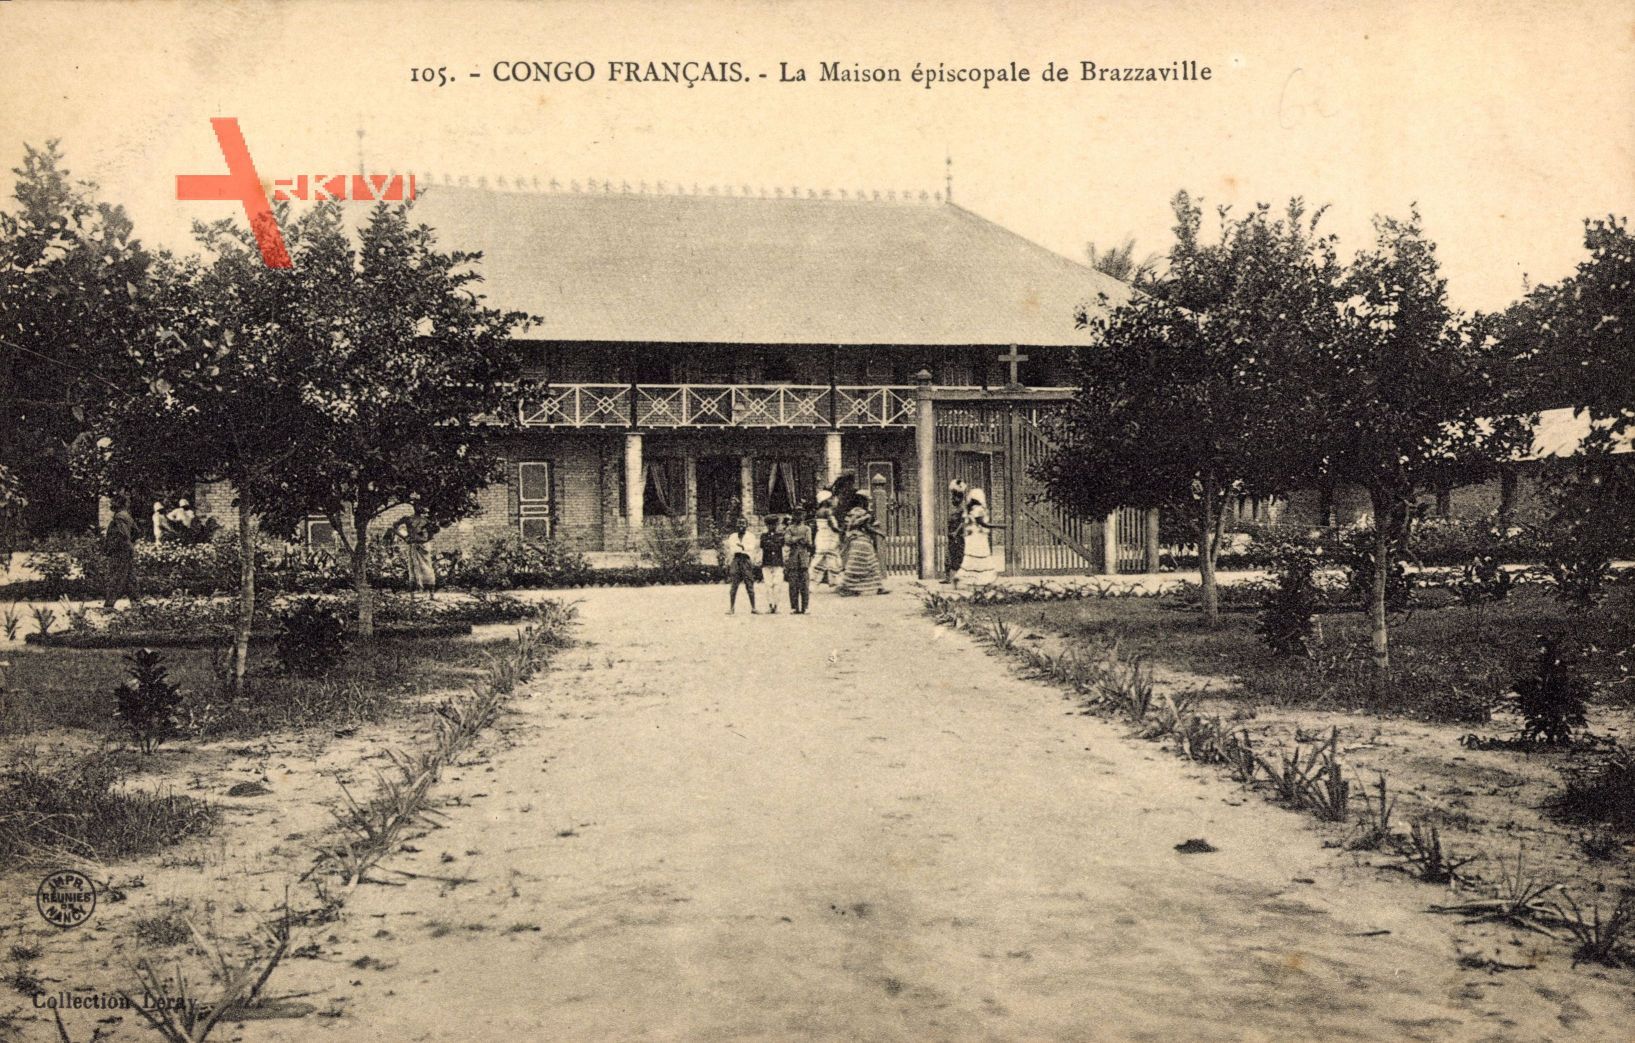 Congo Francais Französisch Kongo, La Maison épiscopale de Brazzaville